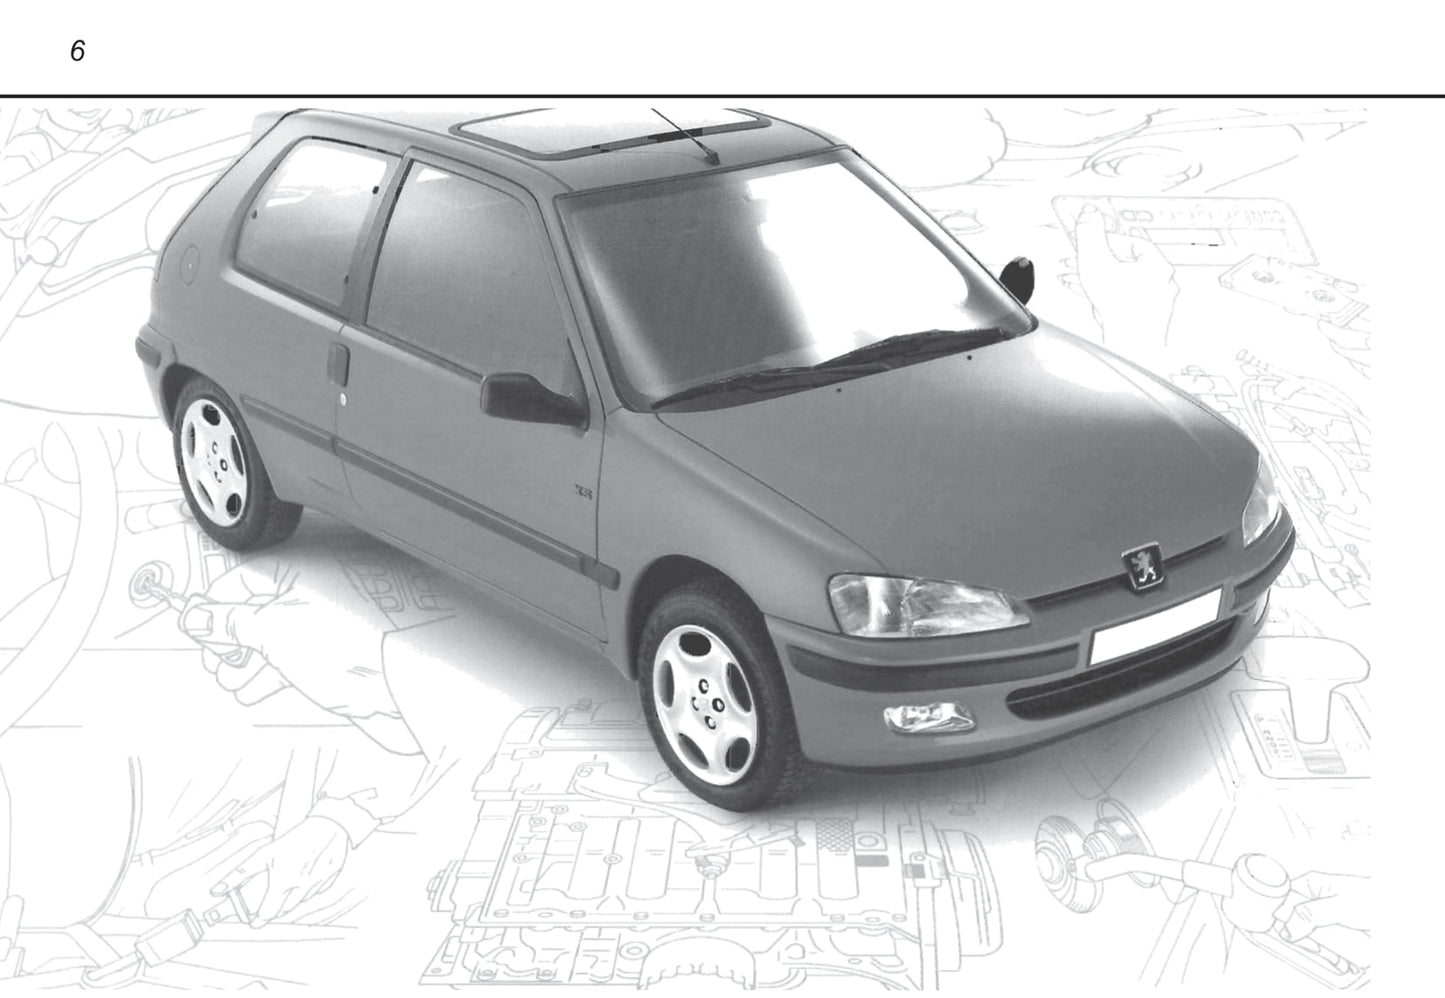 1996-2000 Peugeot 106 Bedienungsanleitung | Niederländisch